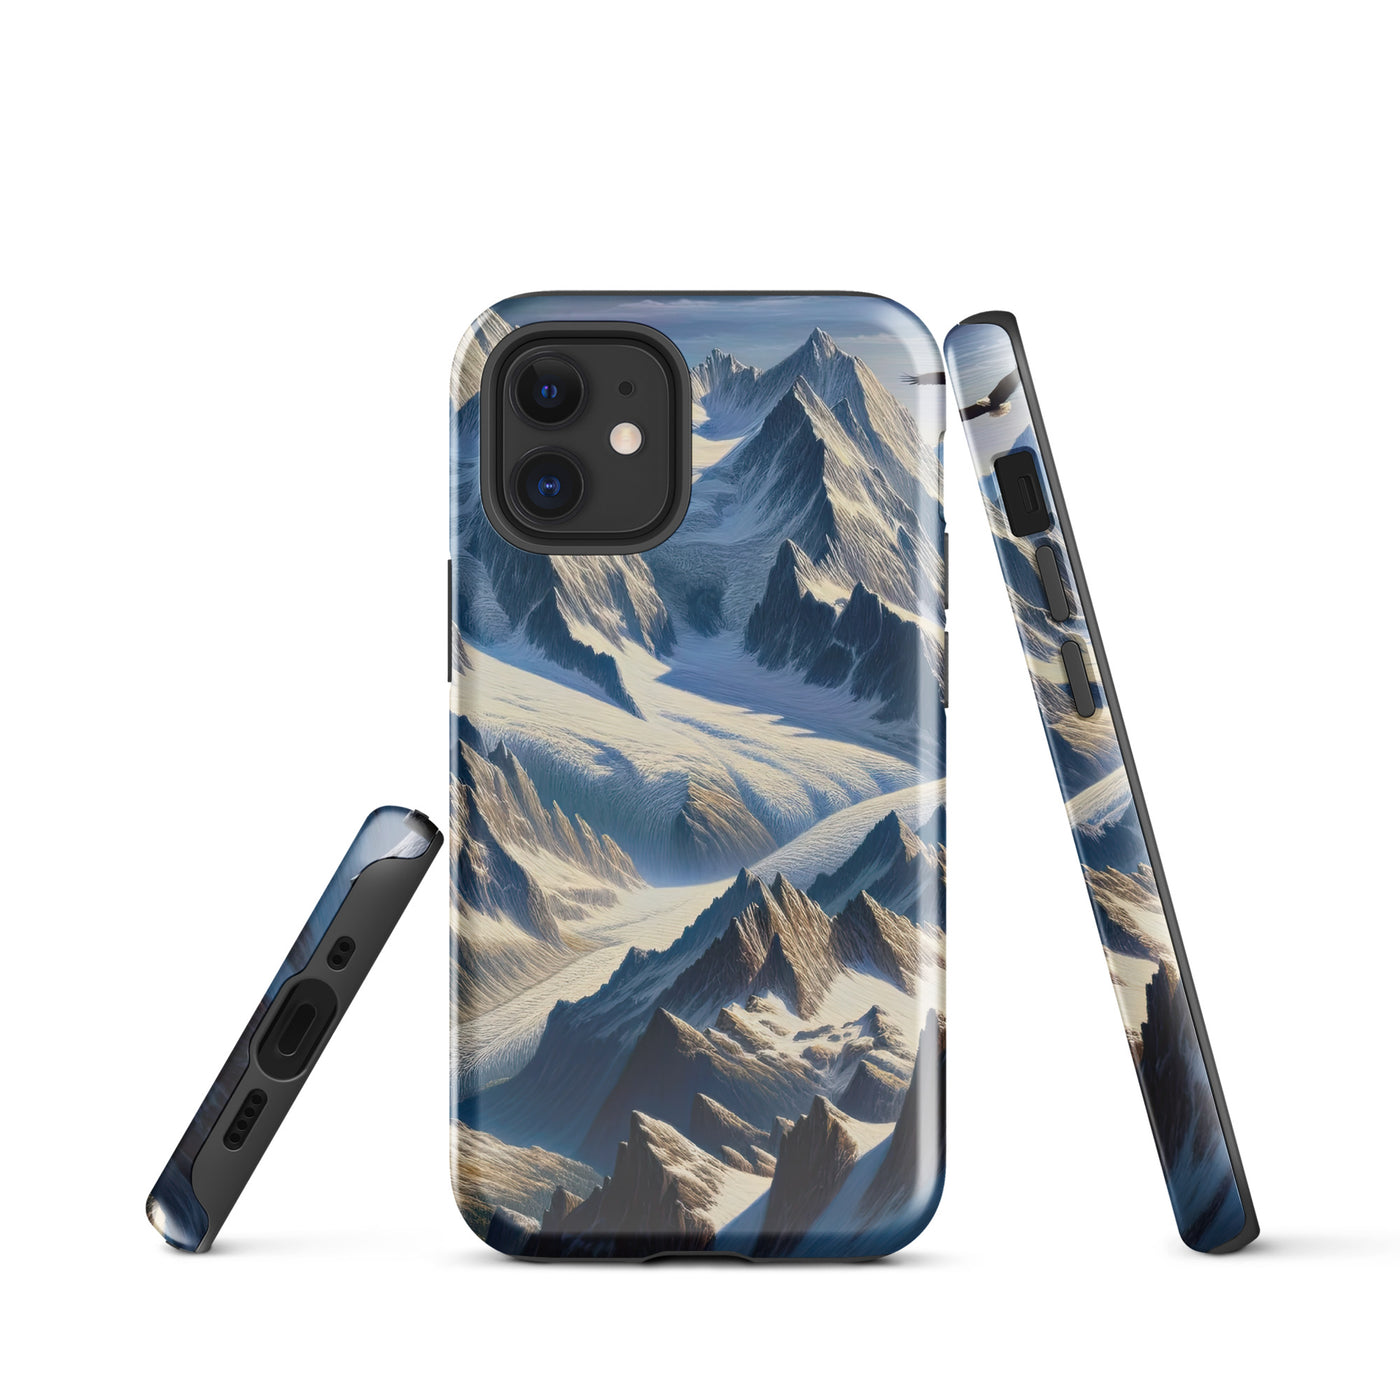 Ölgemälde der Alpen mit hervorgehobenen zerklüfteten Geländen im Licht und Schatten - iPhone Schutzhülle (robust) berge xxx yyy zzz iPhone 12 mini